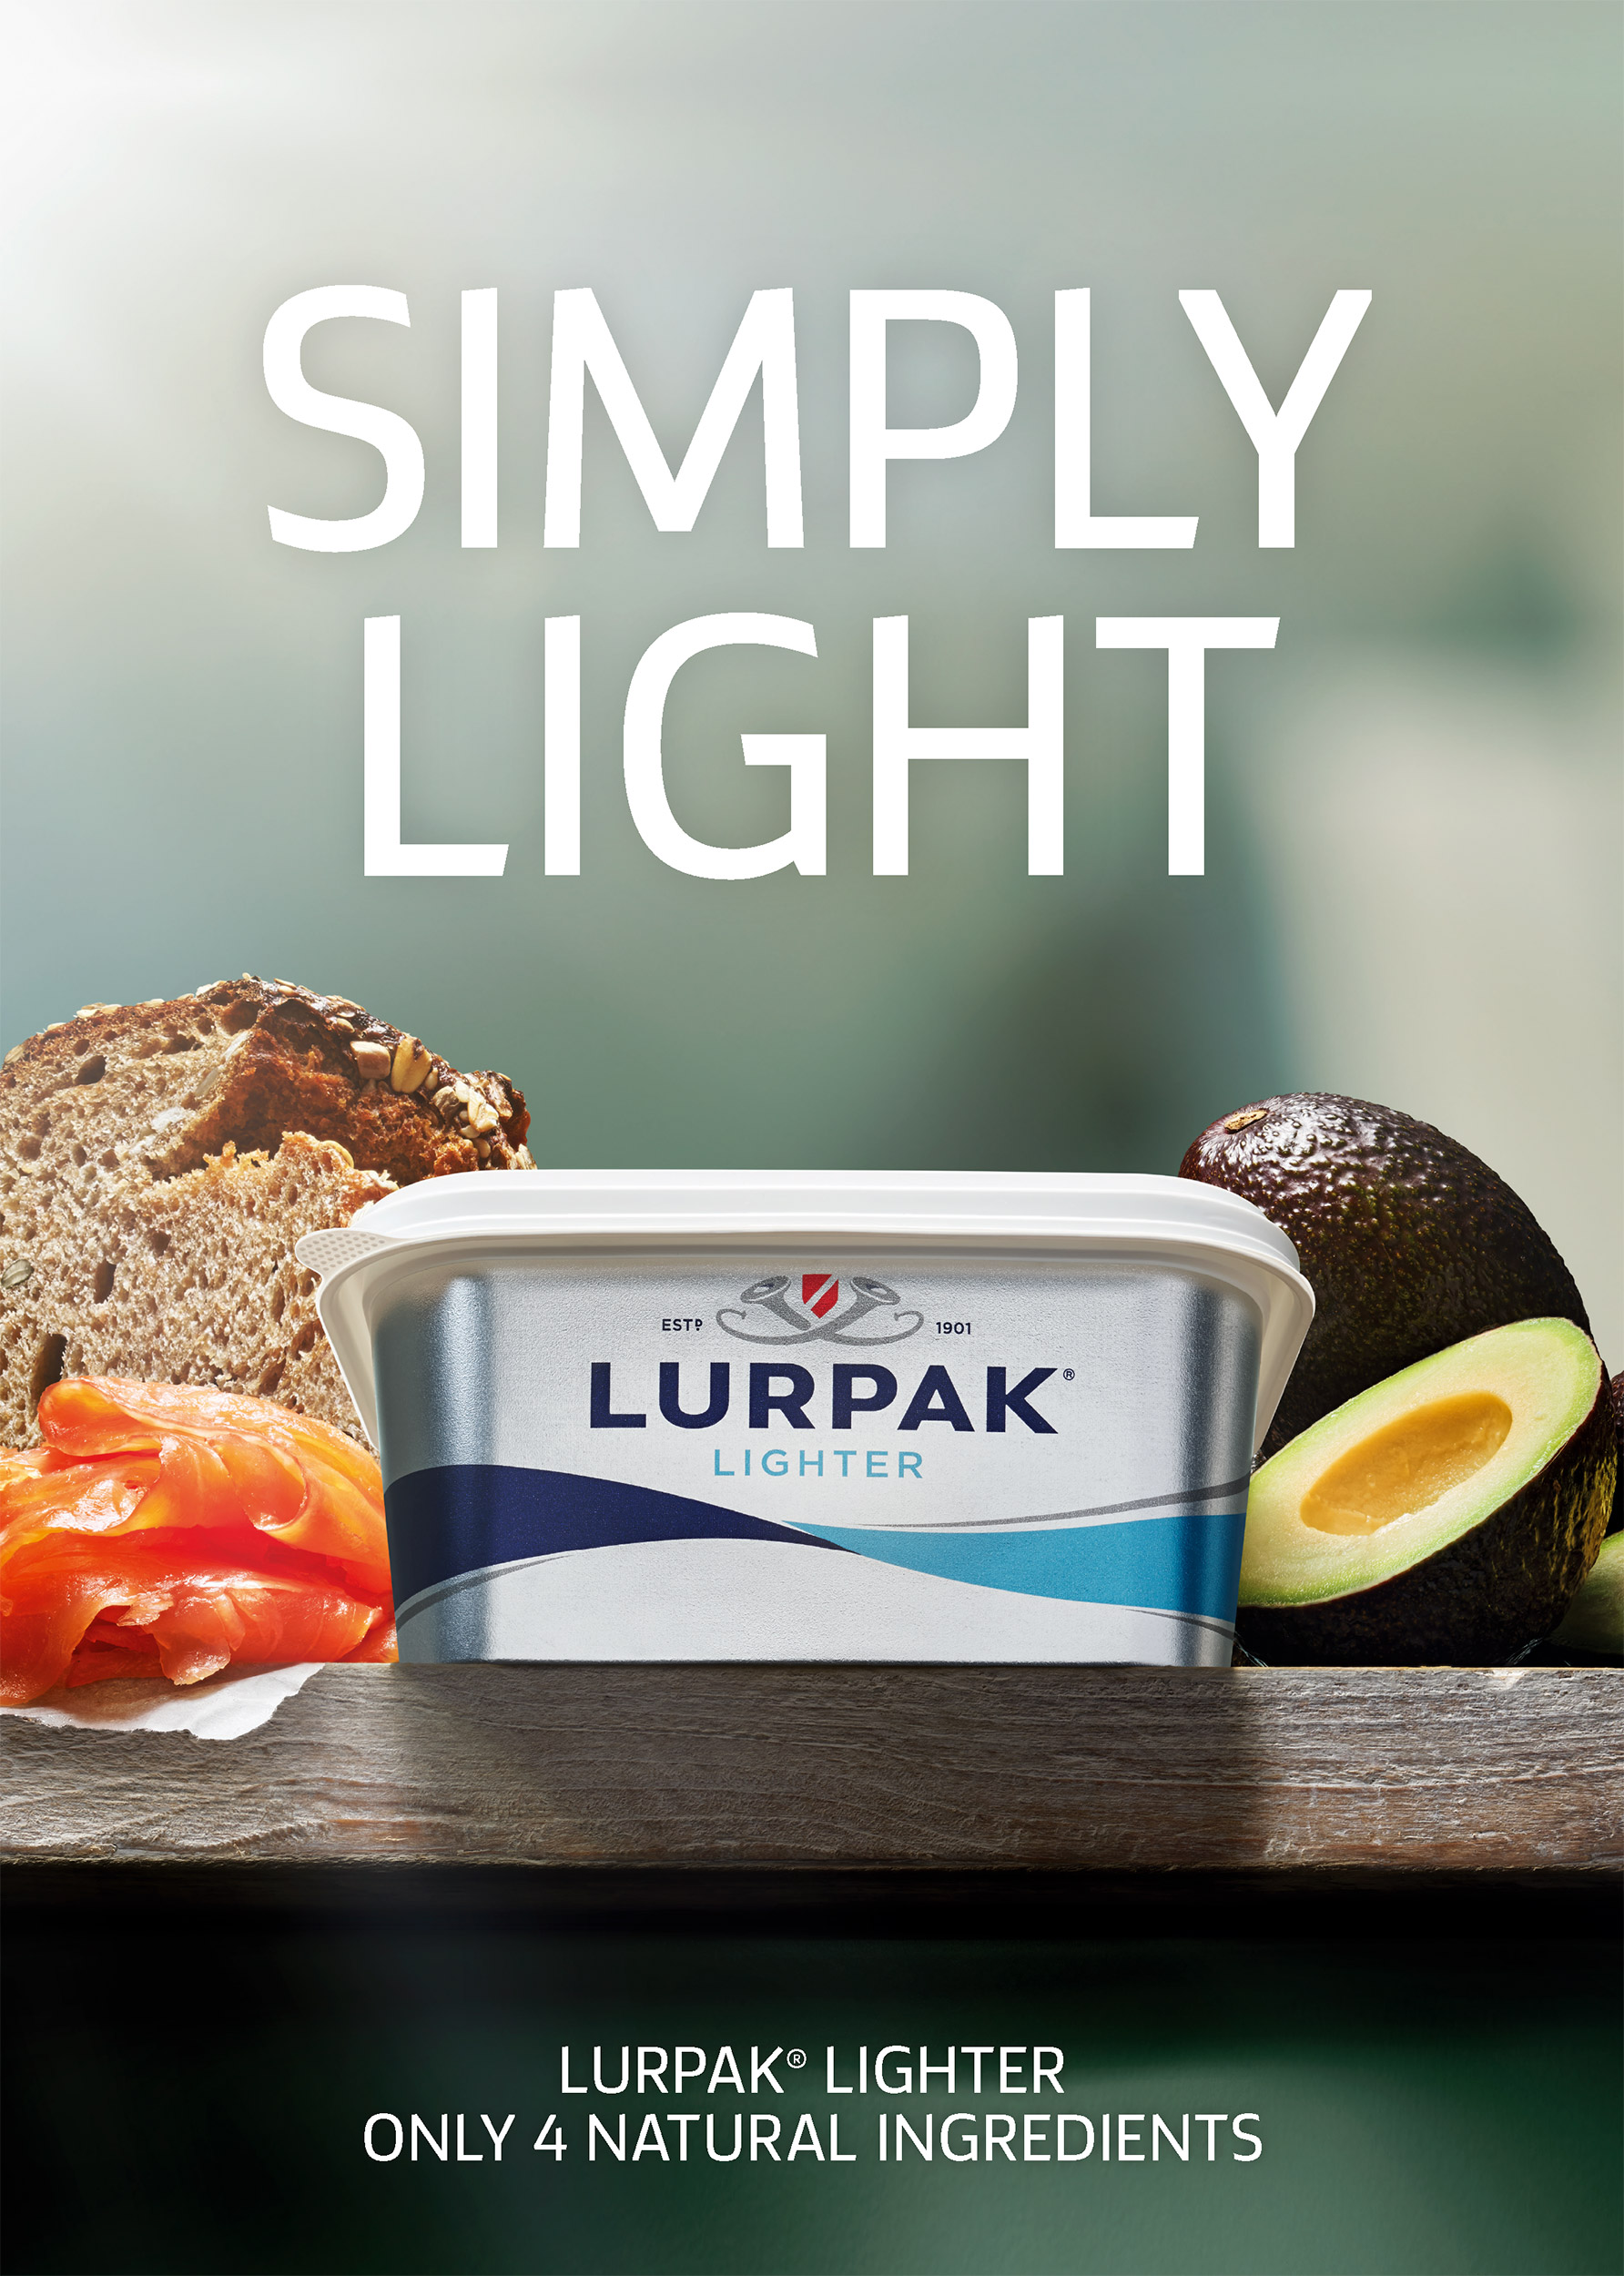 Lurpak-Lighter-6-Colin-Campbell